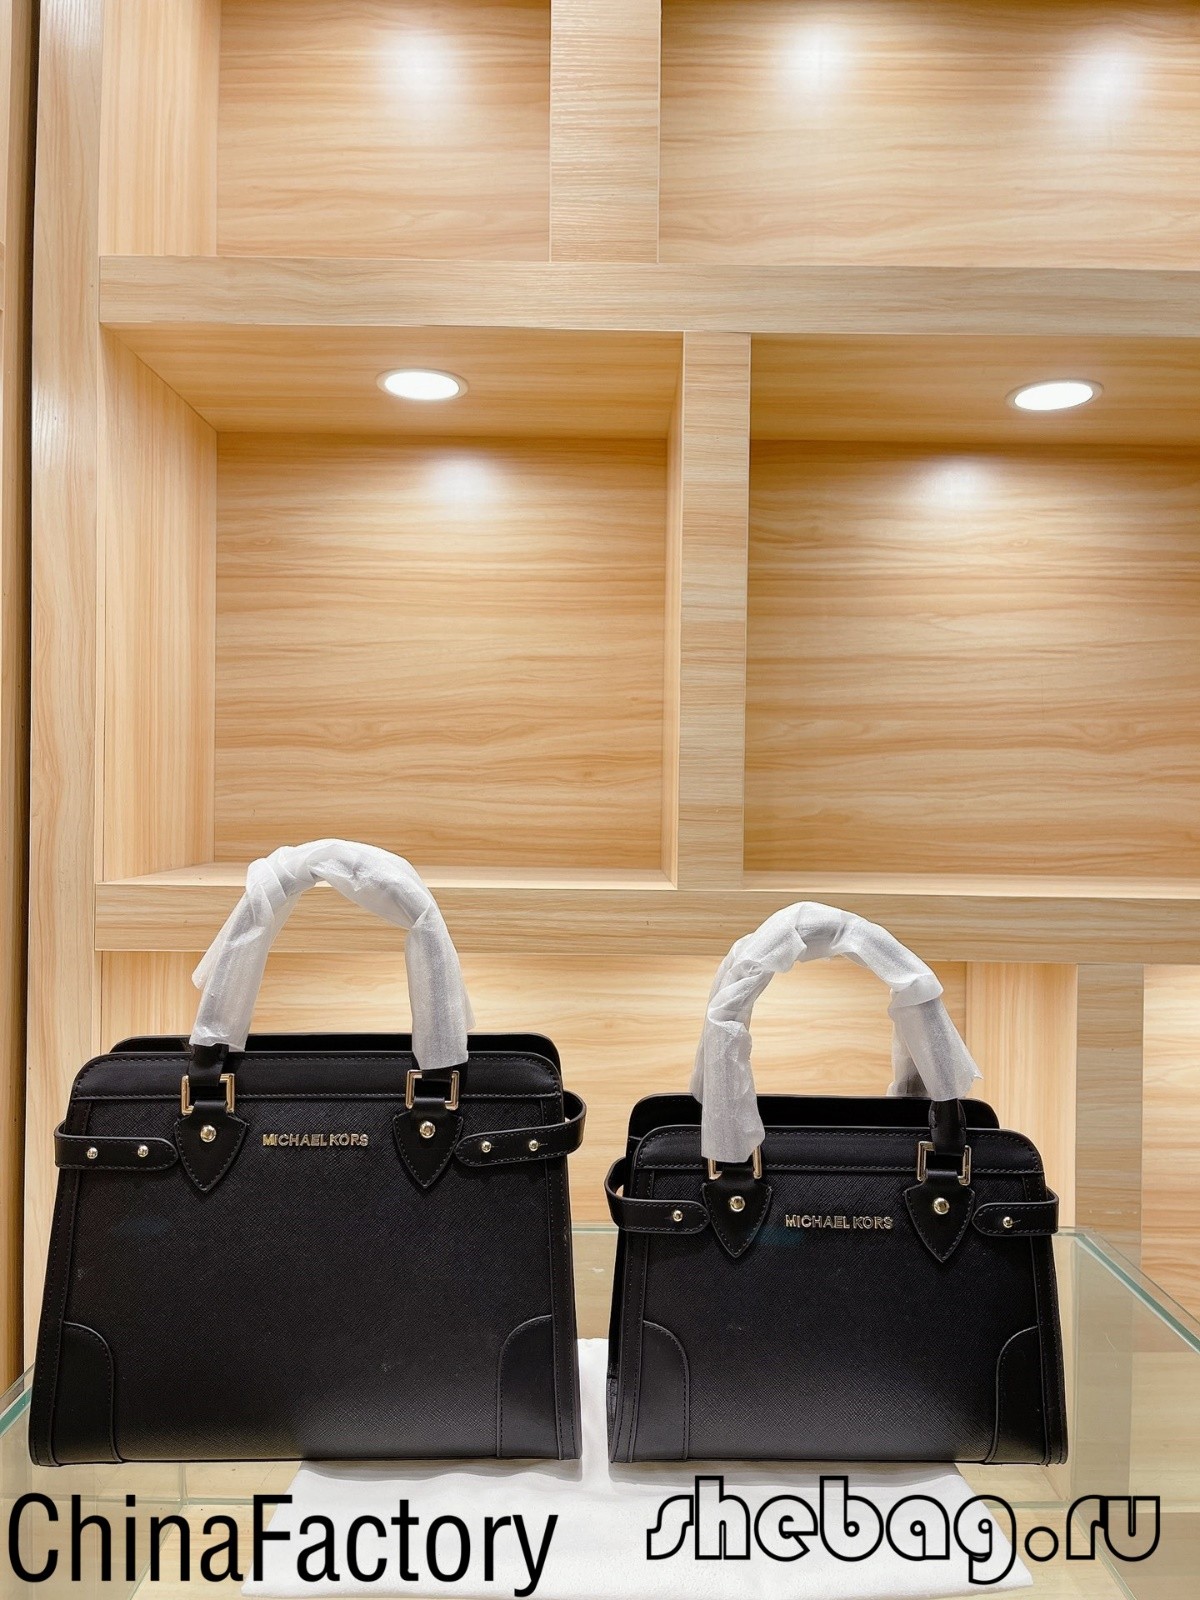 วิธีสังเกตกระเป๋าดีไซเนอร์ปลอม (ภาพถ่ายปลอม vs ภาพถ่ายจริง): Michael Kors-ร้านค้าออนไลน์กระเป๋า Louis Vuitton ปลอมคุณภาพดีที่สุด, กระเป๋าออกแบบจำลอง ru